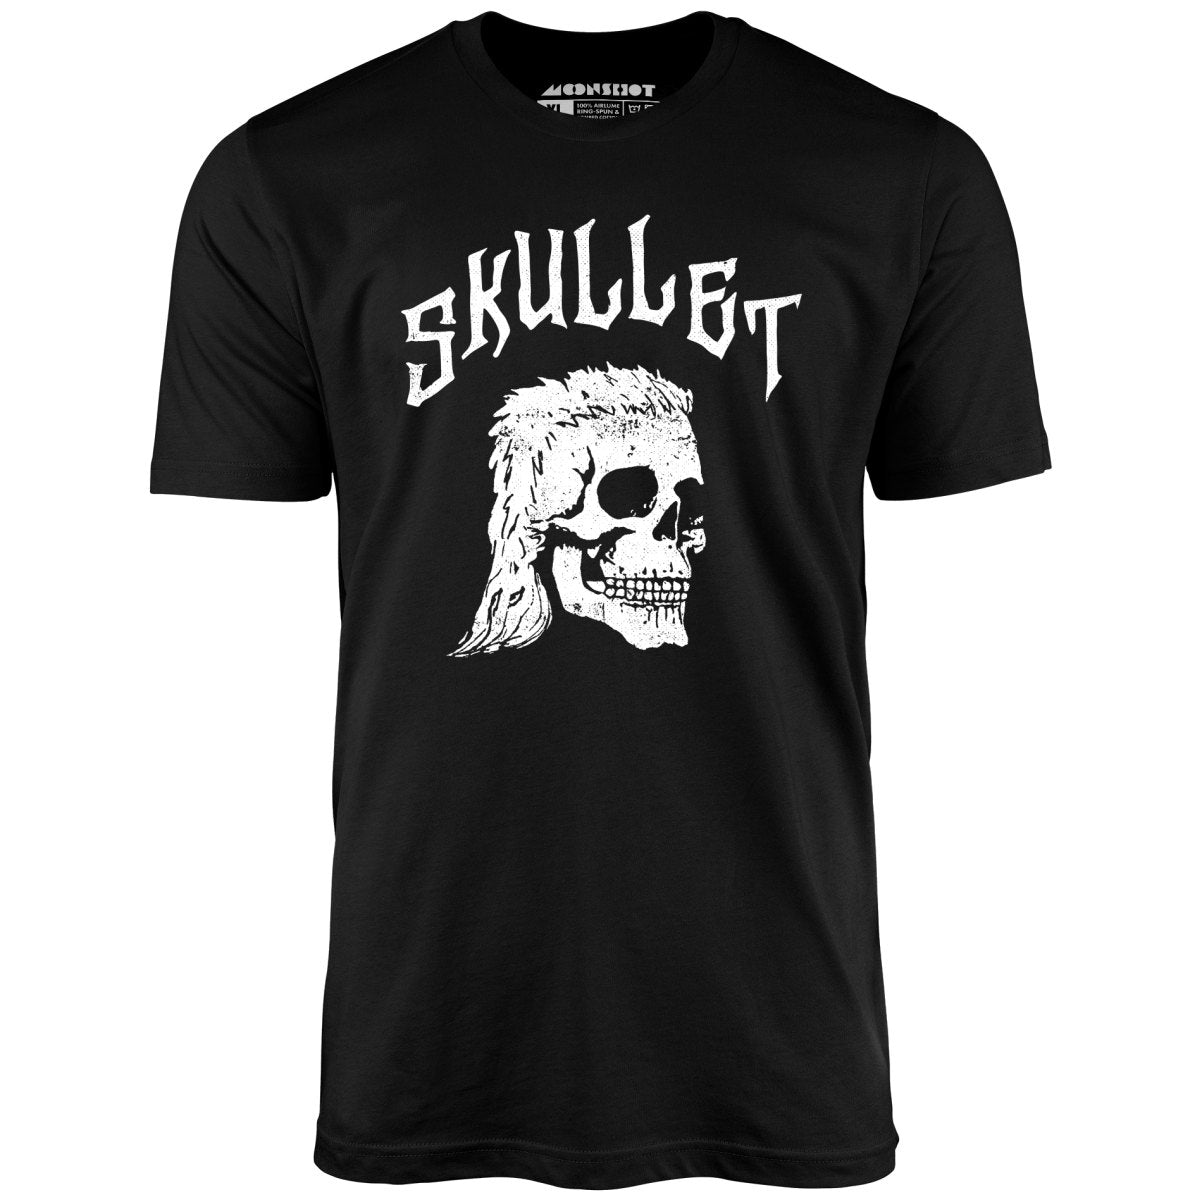 Skullet - Unisex T-Shirt